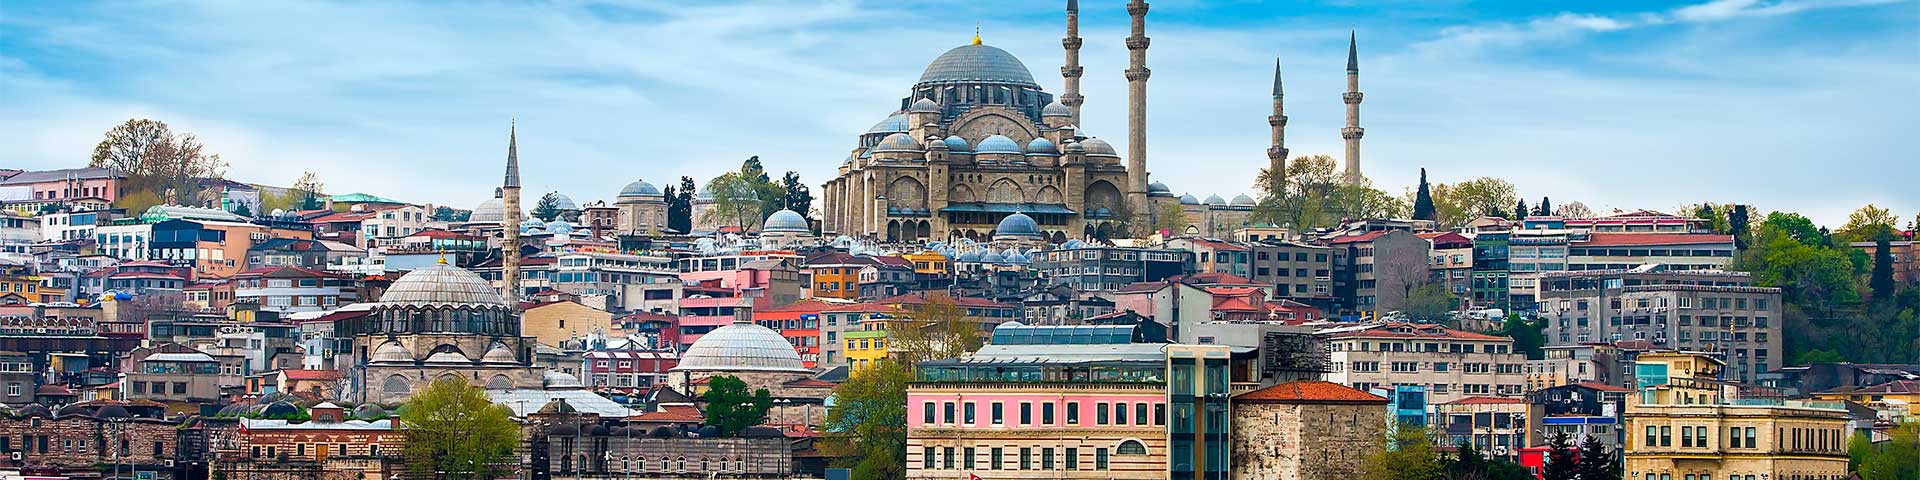 Türkisch Übersetzung: Panoramabild von Istanbul, Türkei, bei Tageslicht.